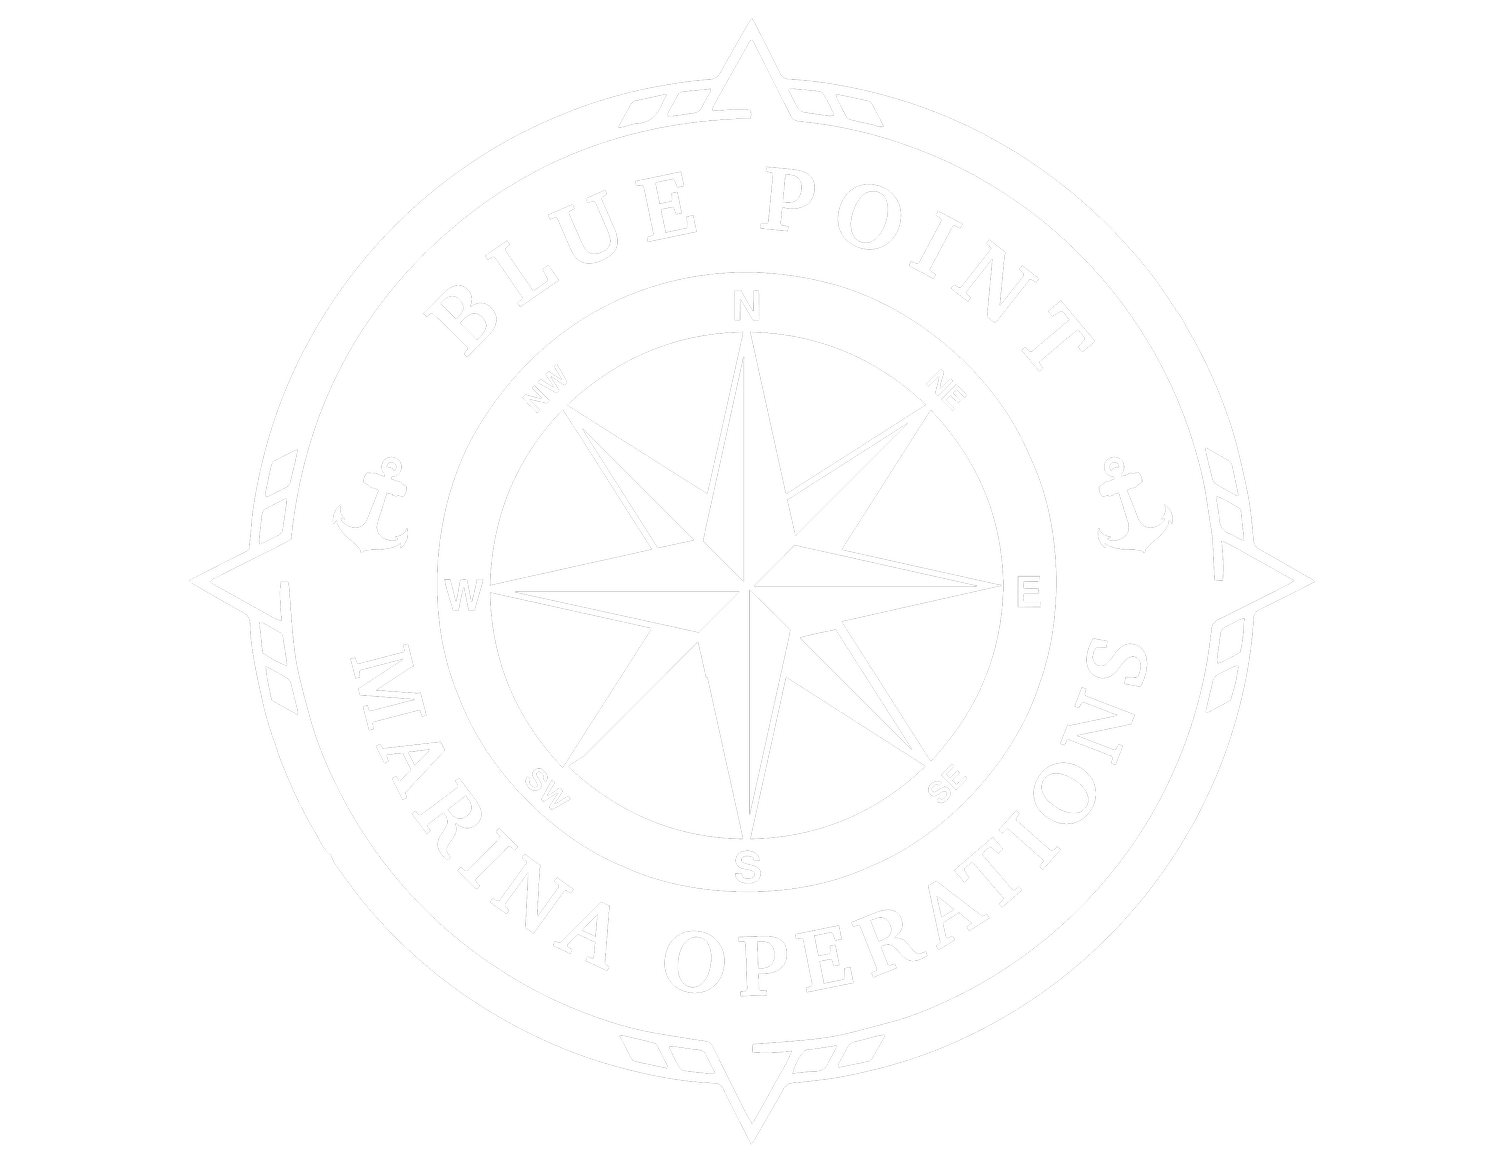 Blue Point Marina Operations